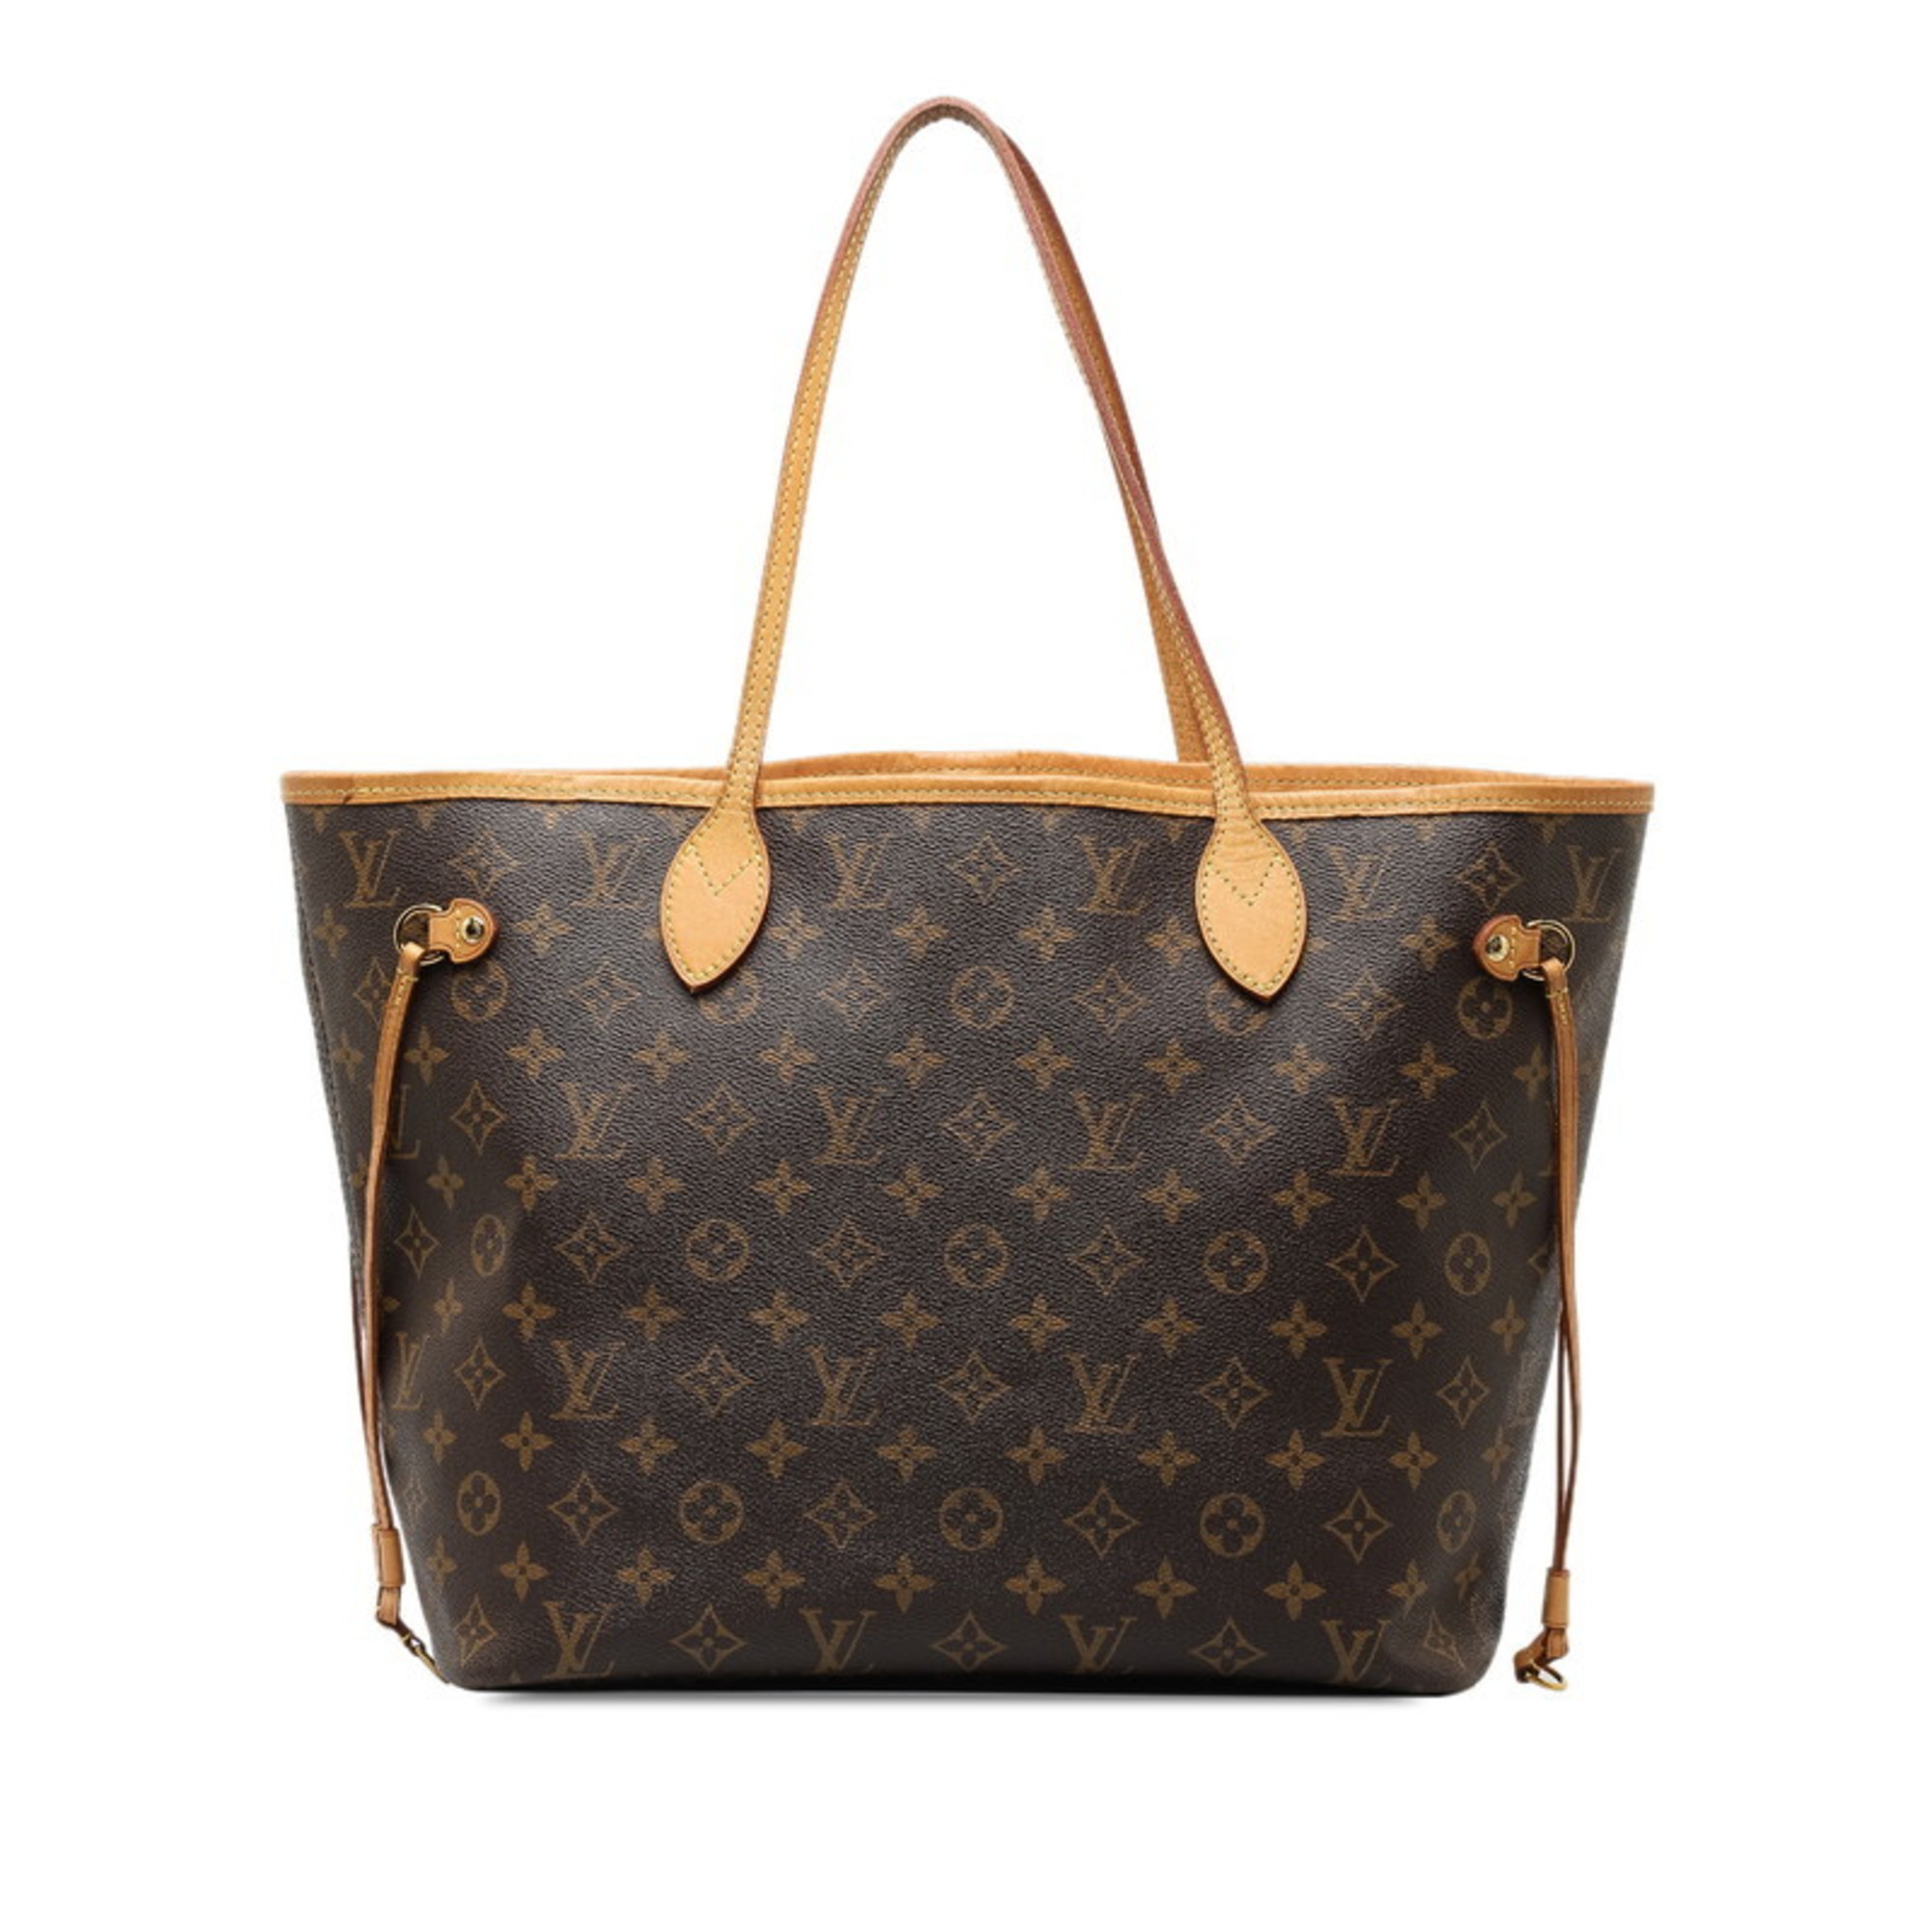 Louis Vuitton Monogram Neverfull MM Shoulder Bag Tote M40995 Brown PVC Leather Women's LOUIS VUITTON